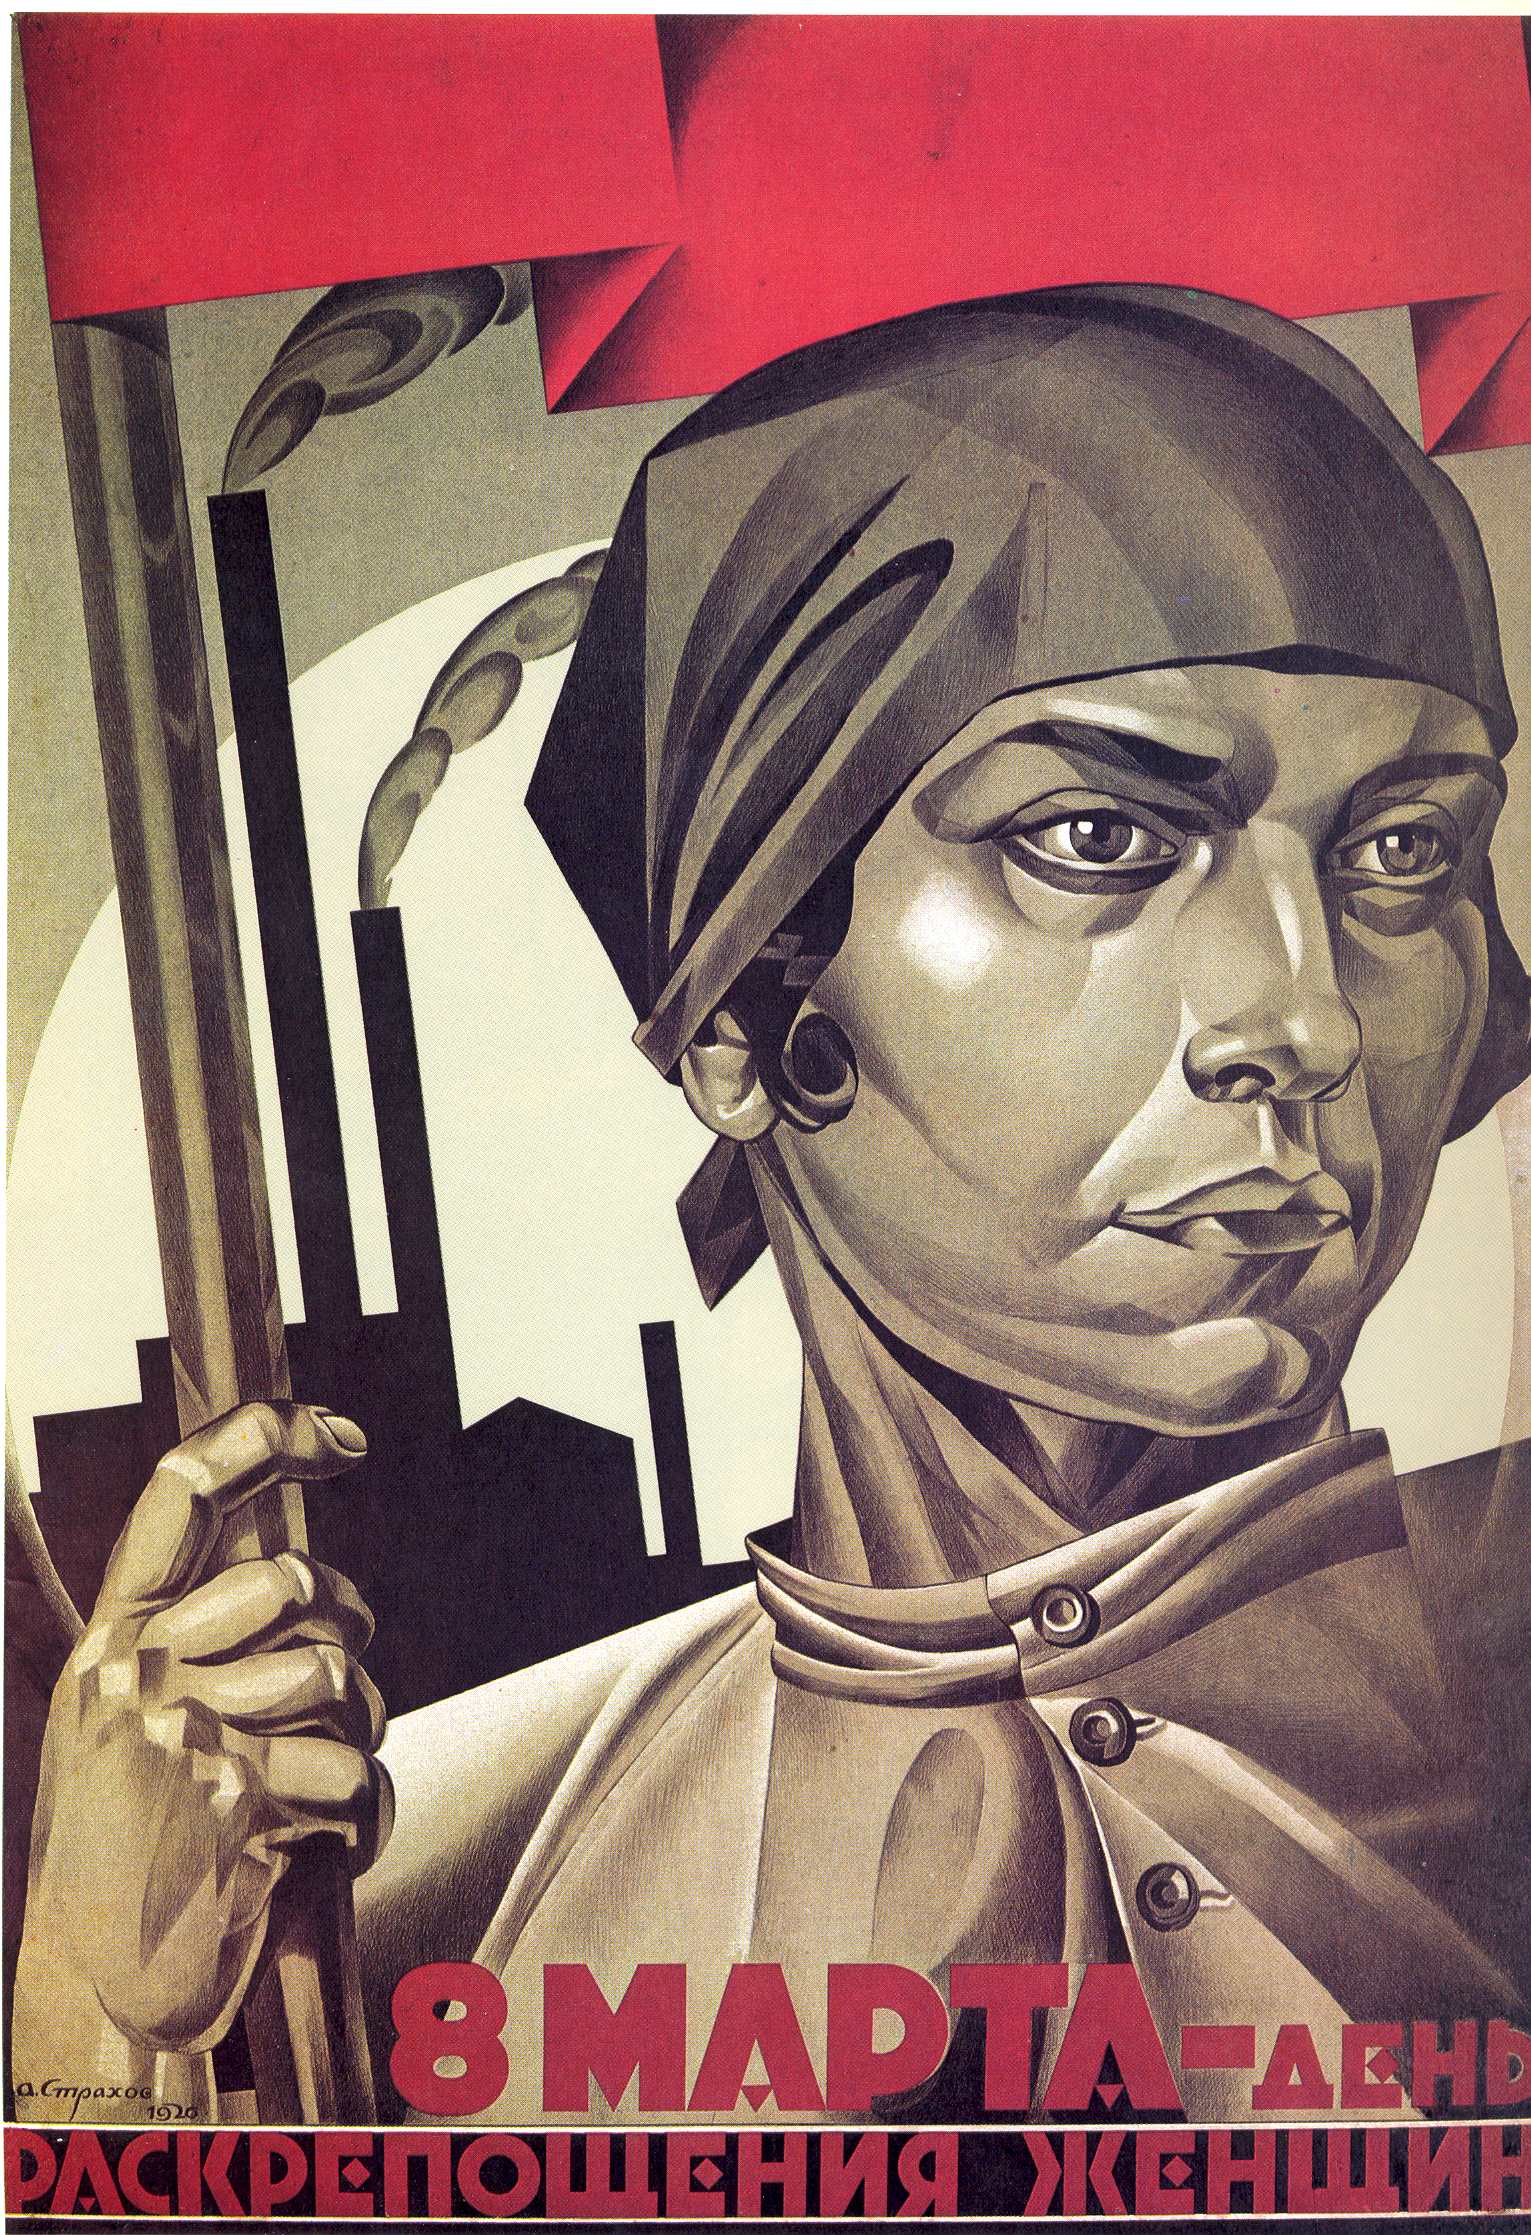 Раскрепощенная женщина — строй социализм! Автор: А. И. Страхов-Браславский Год: 1926